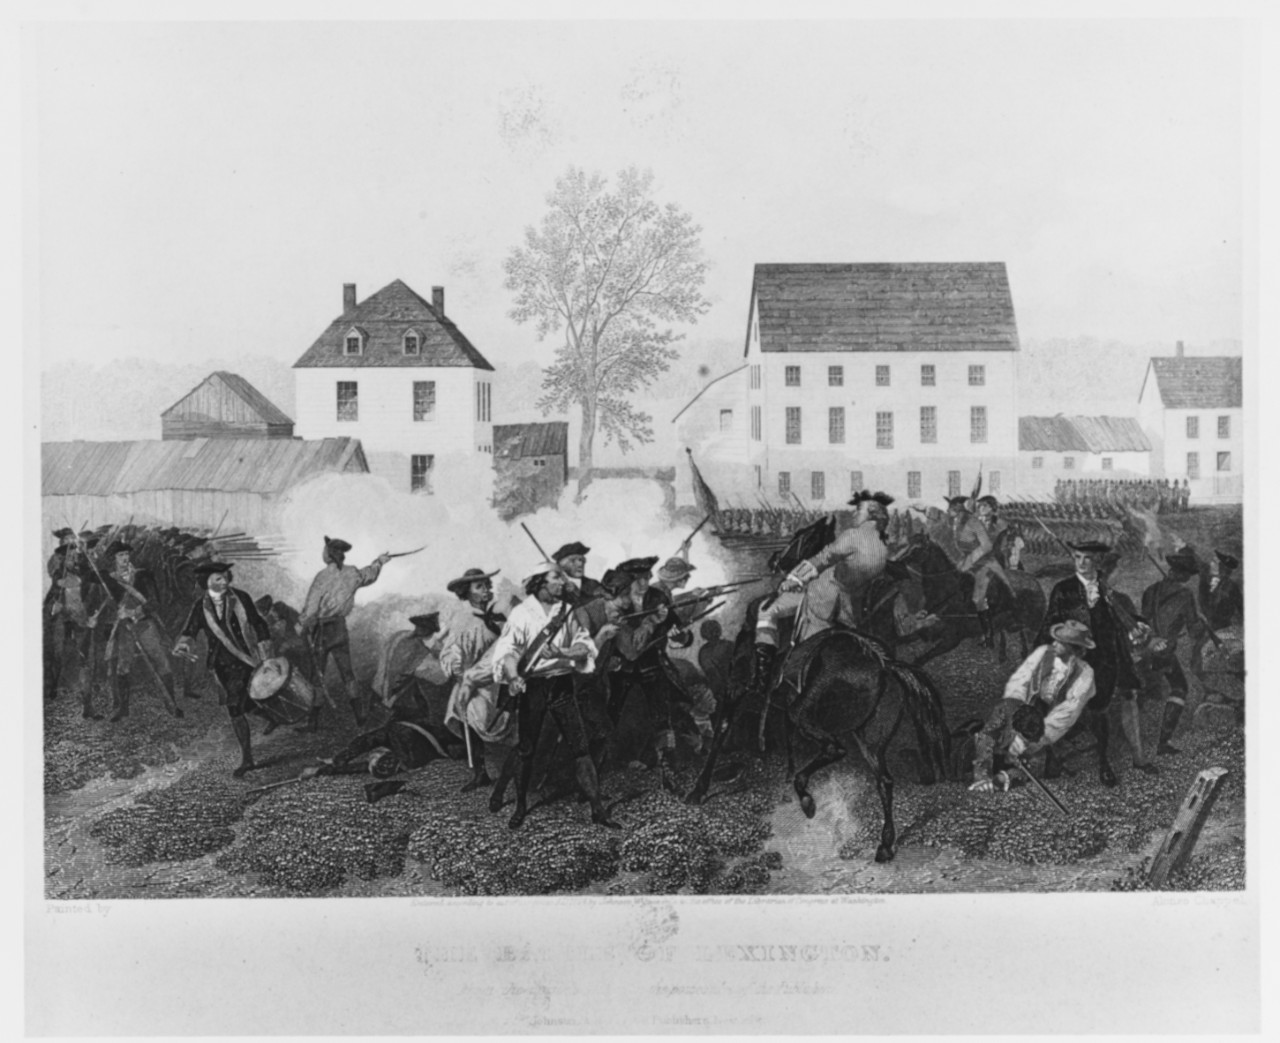 Battle of Lexington, 19 April 1775